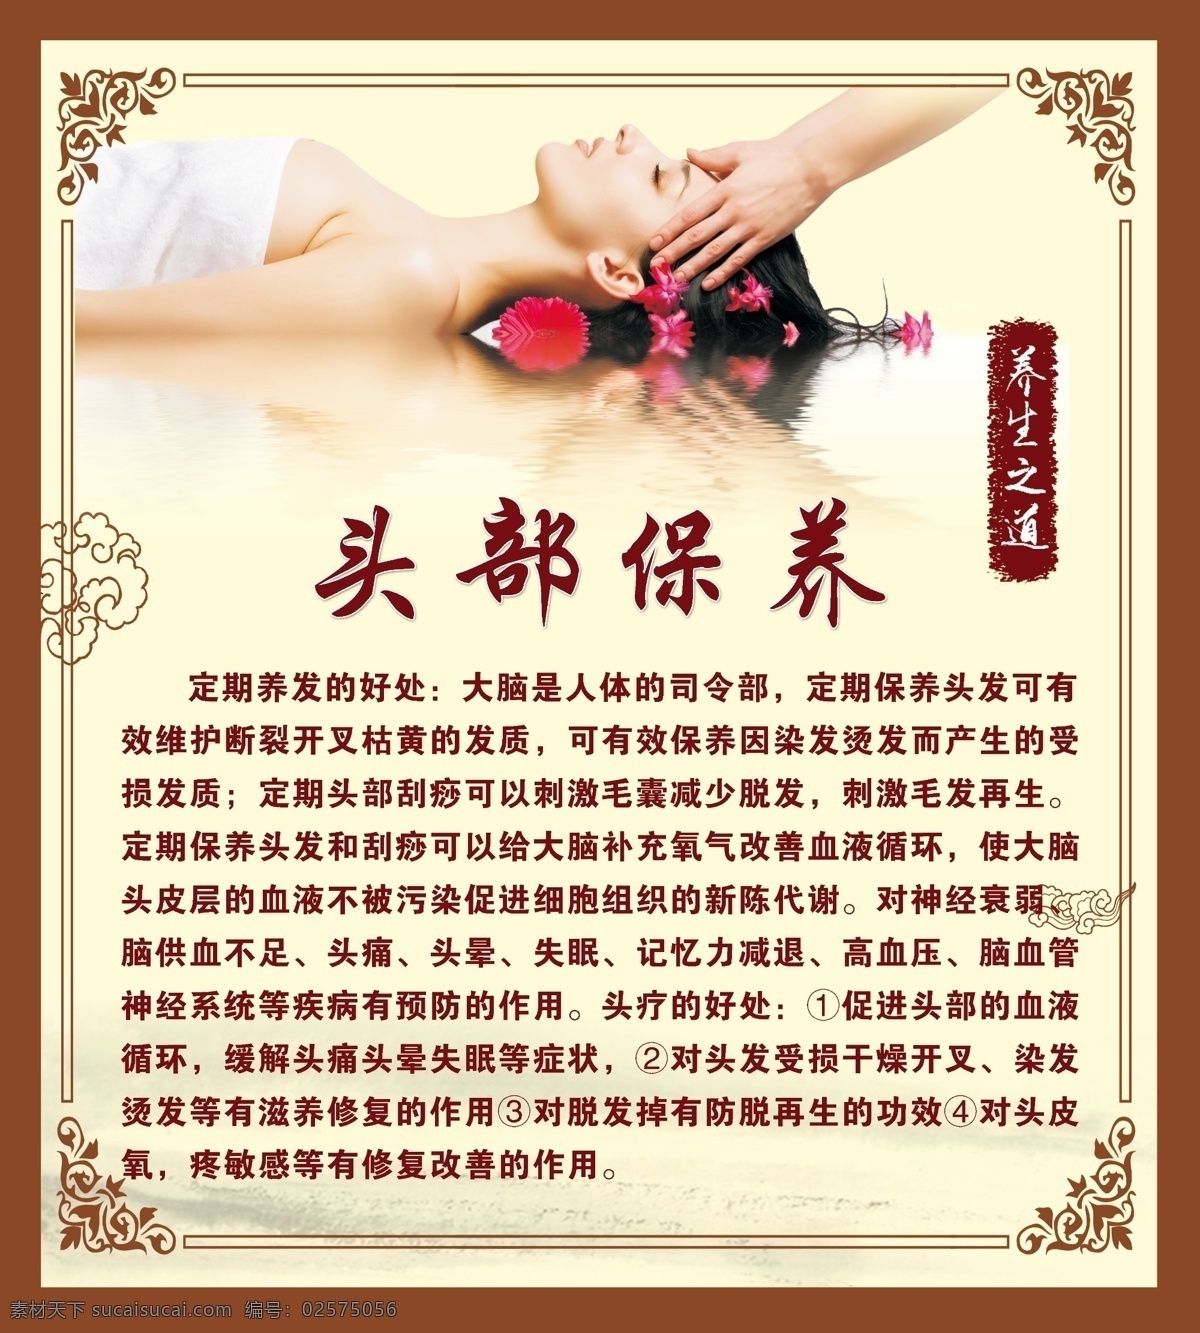 头部理疗保养 头皮 头疗 养生 头皮理疗 头部理疗 头皮写真 中国风背景 室内广告设计